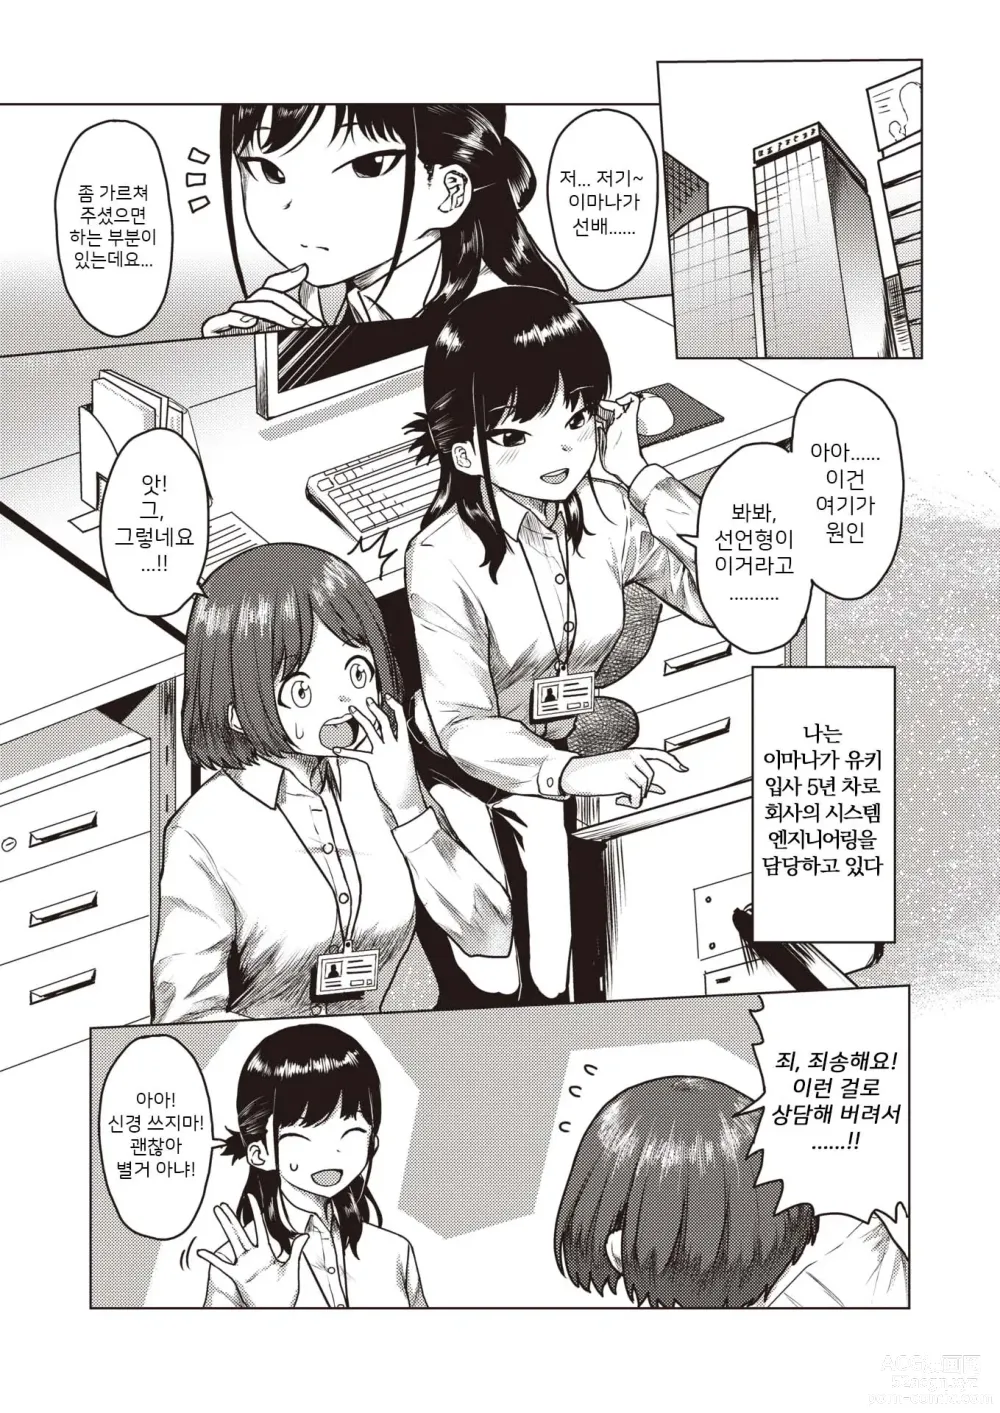 Page 3 of manga Cracking